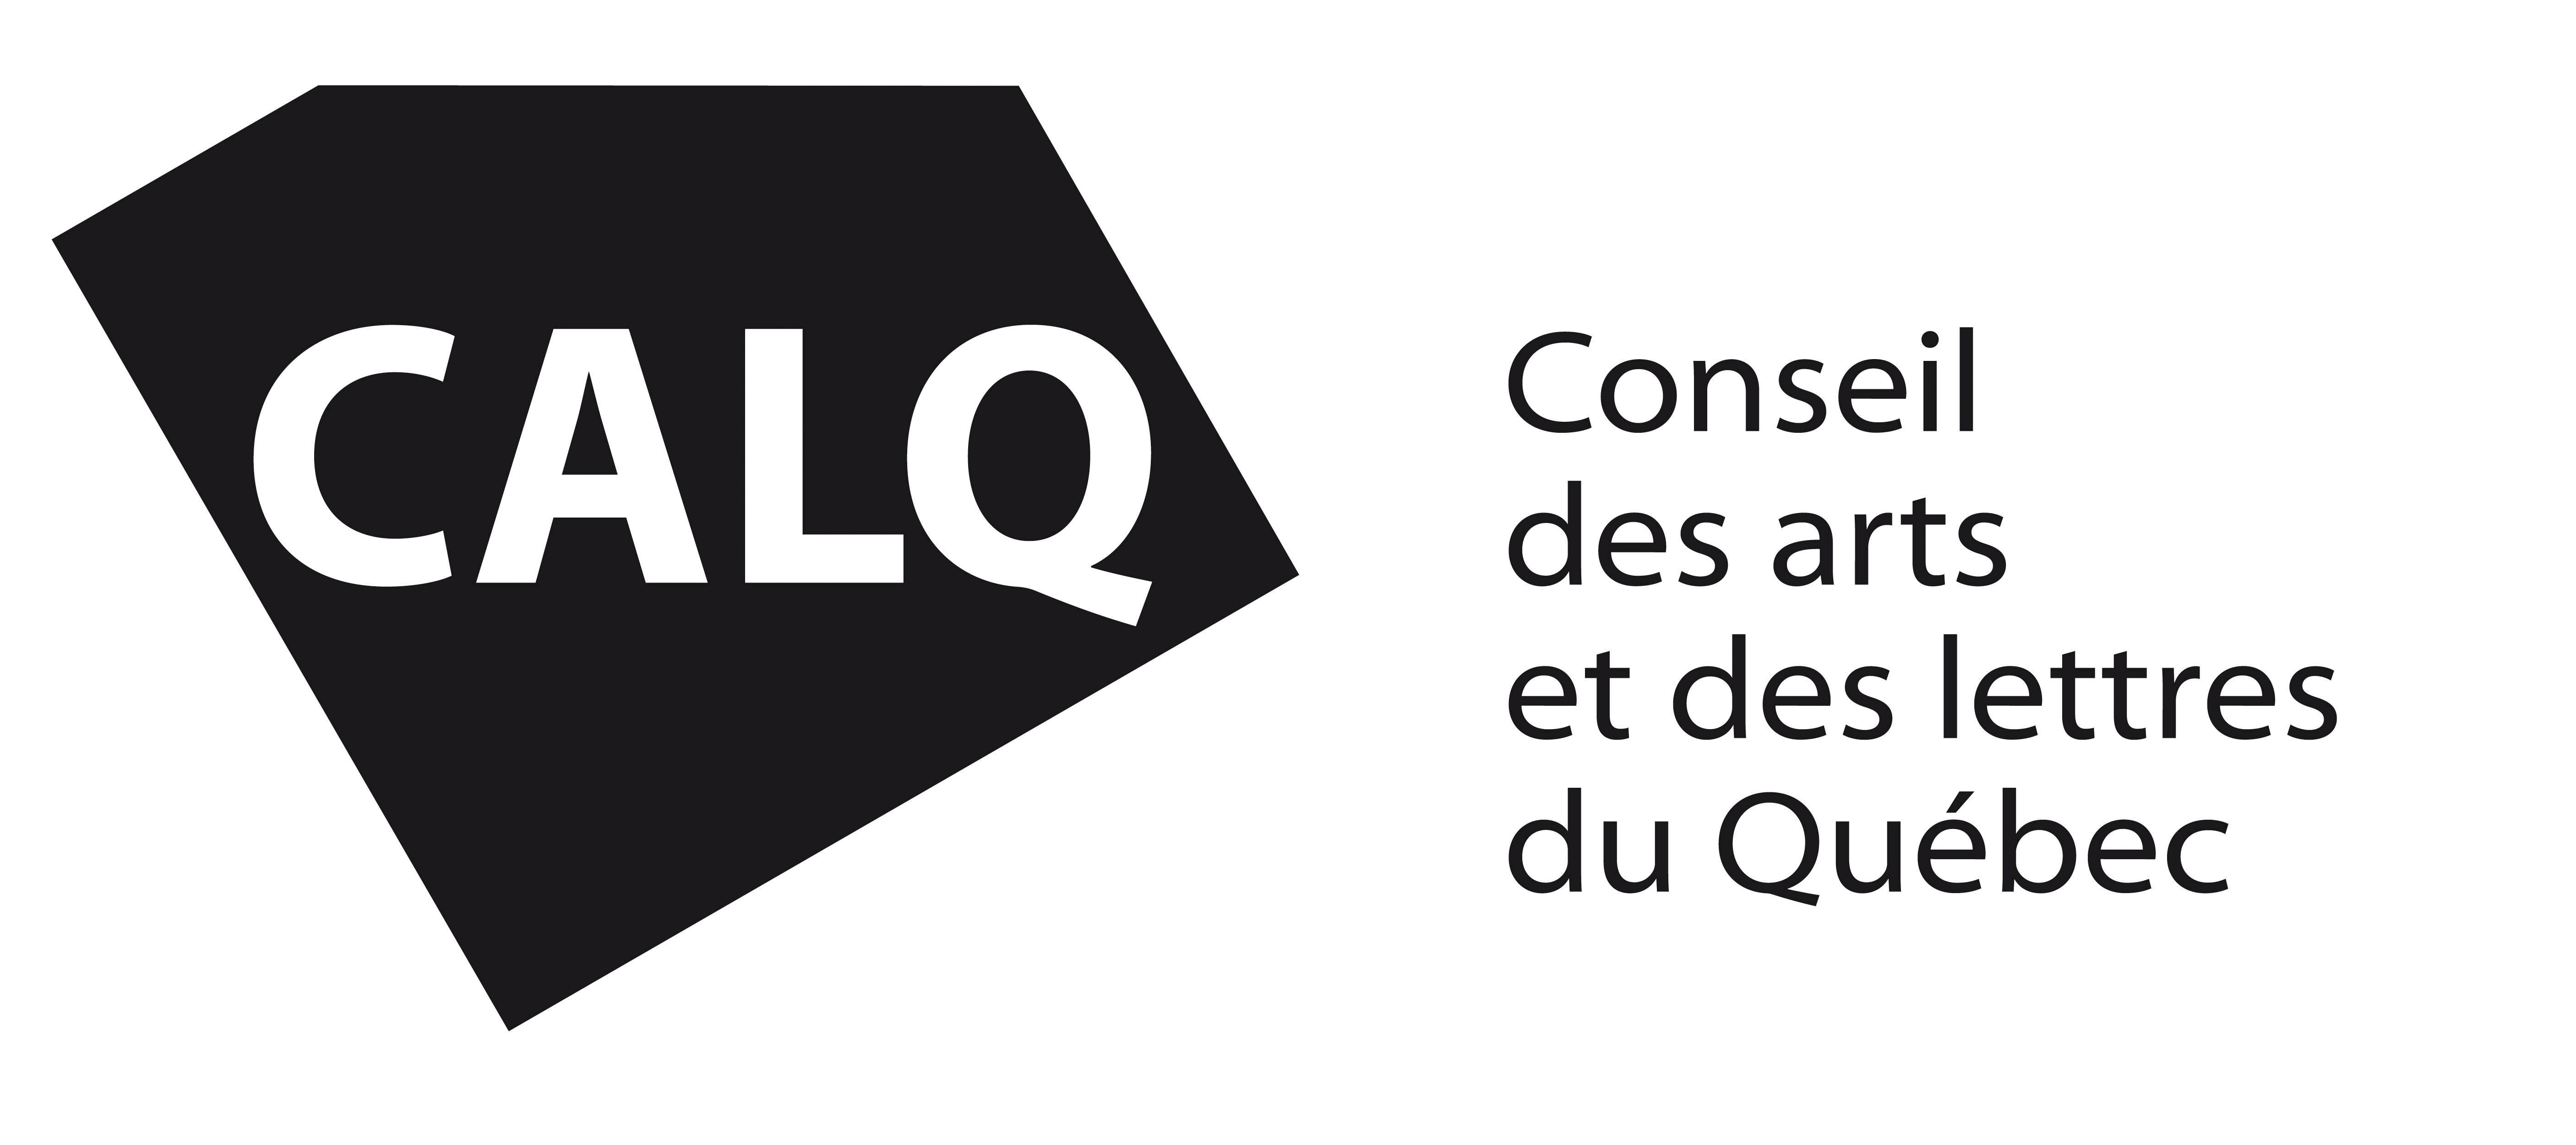 Conseil des arts et des lettres du Québec - Entente de partenariat territorial